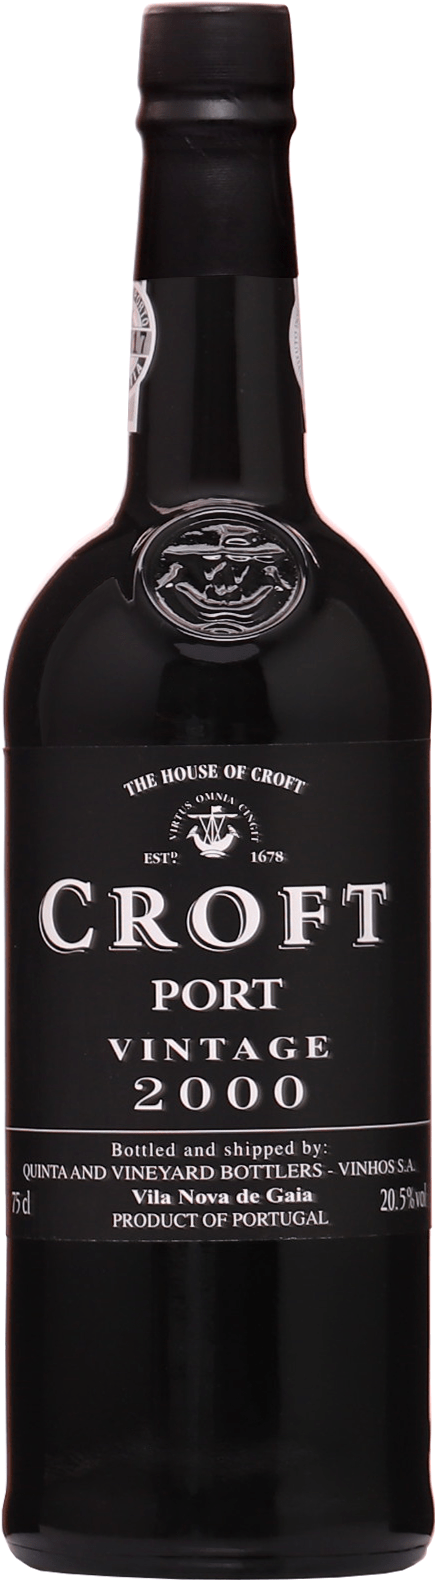 Croft Port Vintage 2000 20,5% 0,75l